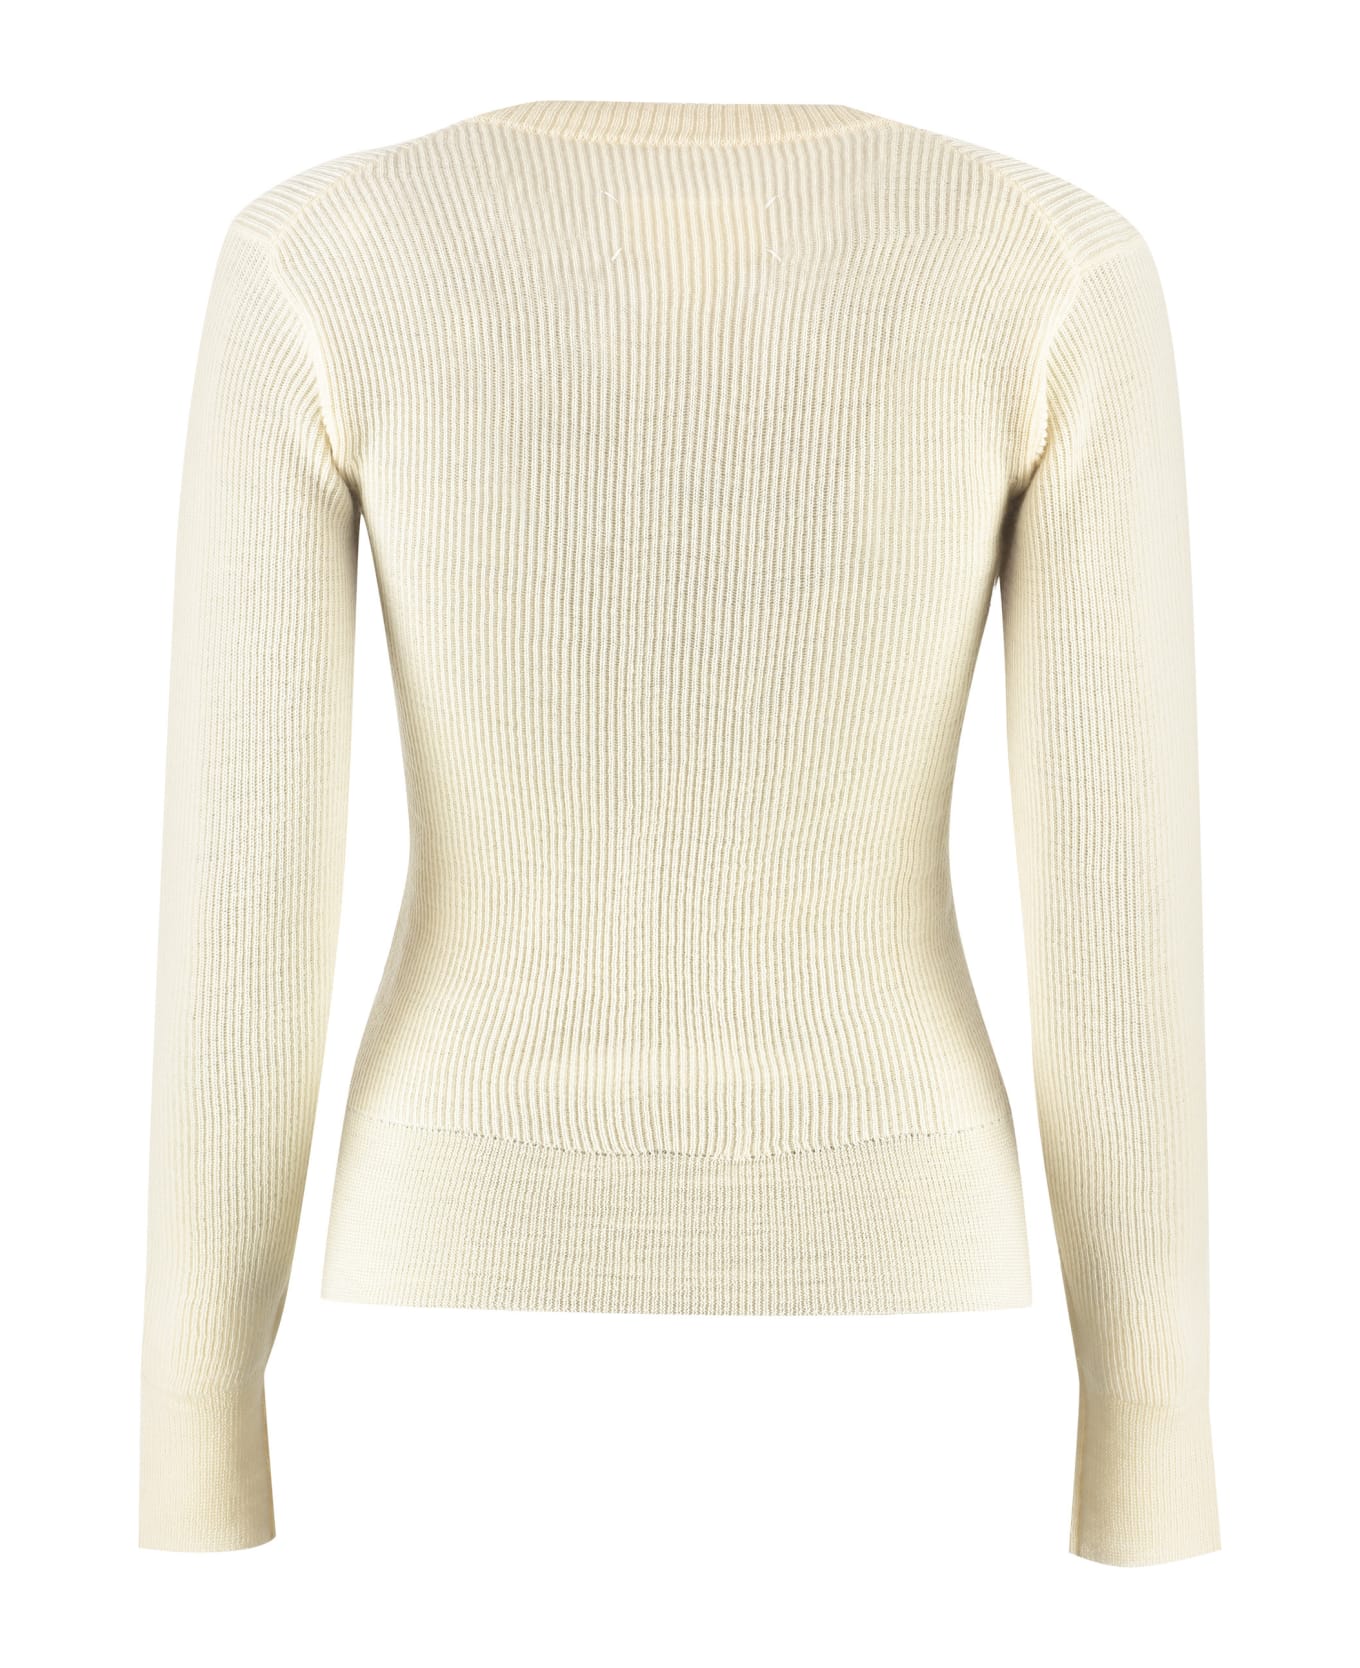 Maison Margiela Ribbed Sweater - White